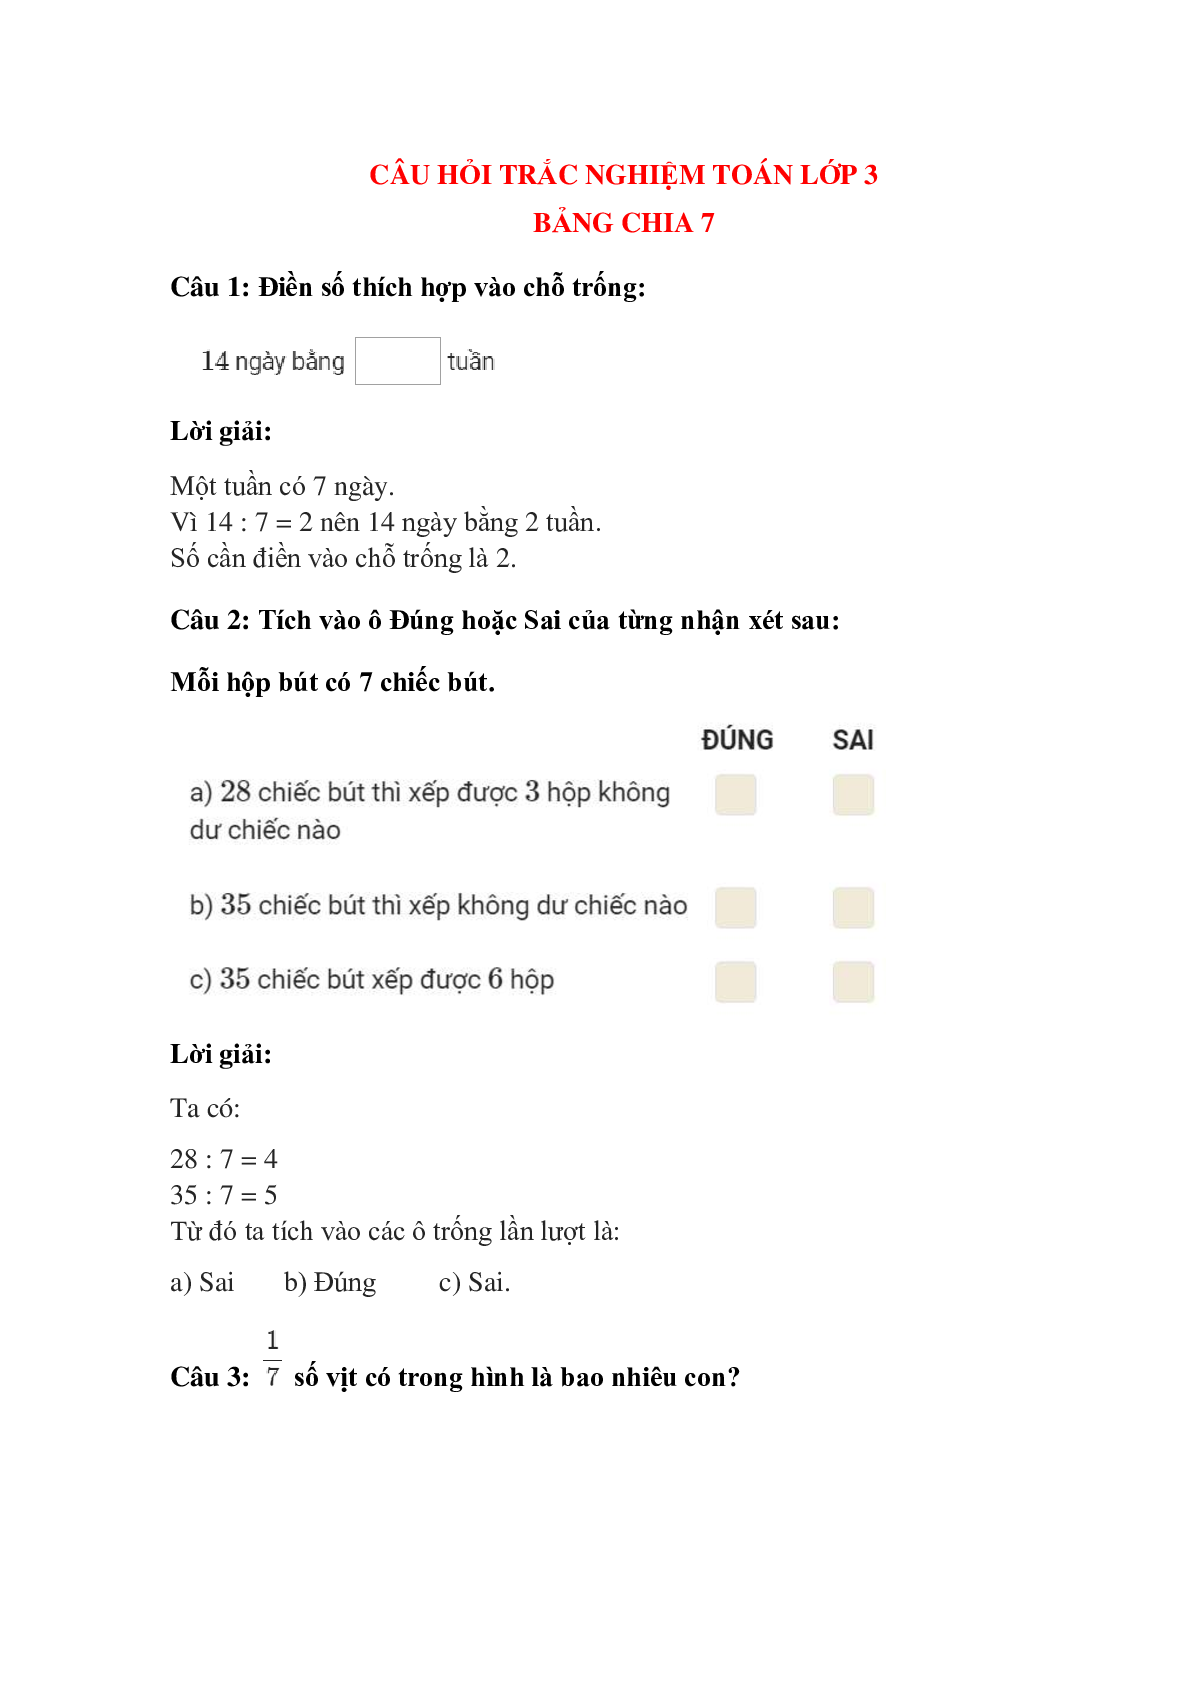 Trắc nghiệm Bảng chia 7 có đáp án – Toán lớp 3 (trang 1)